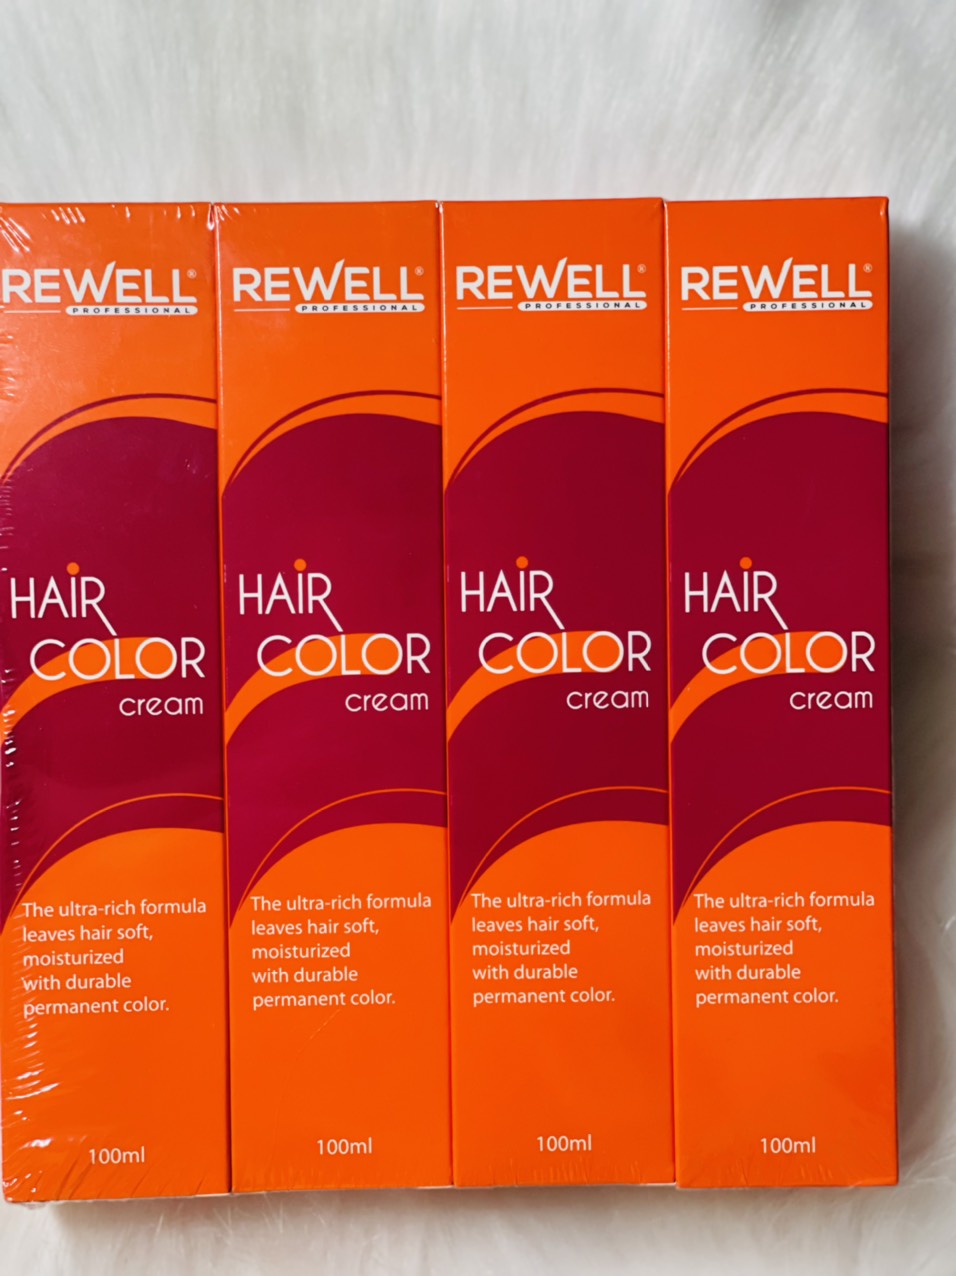 Thuốc nhuộm tóc màu rewell mang đến cho bạn một cách nhuộm tóc hiệu quả và an toàn. Nhờ công thức độc đáo và các thành phần tự nhiên, màu tóc sẽ được bảo vệ và lâu phai hơn. Bạn sẽ không còn phải lo lắng về tình trạng tóc khô và uốn chuyển màu. Nhấn vào hình ảnh để xem thêm chi tiết.